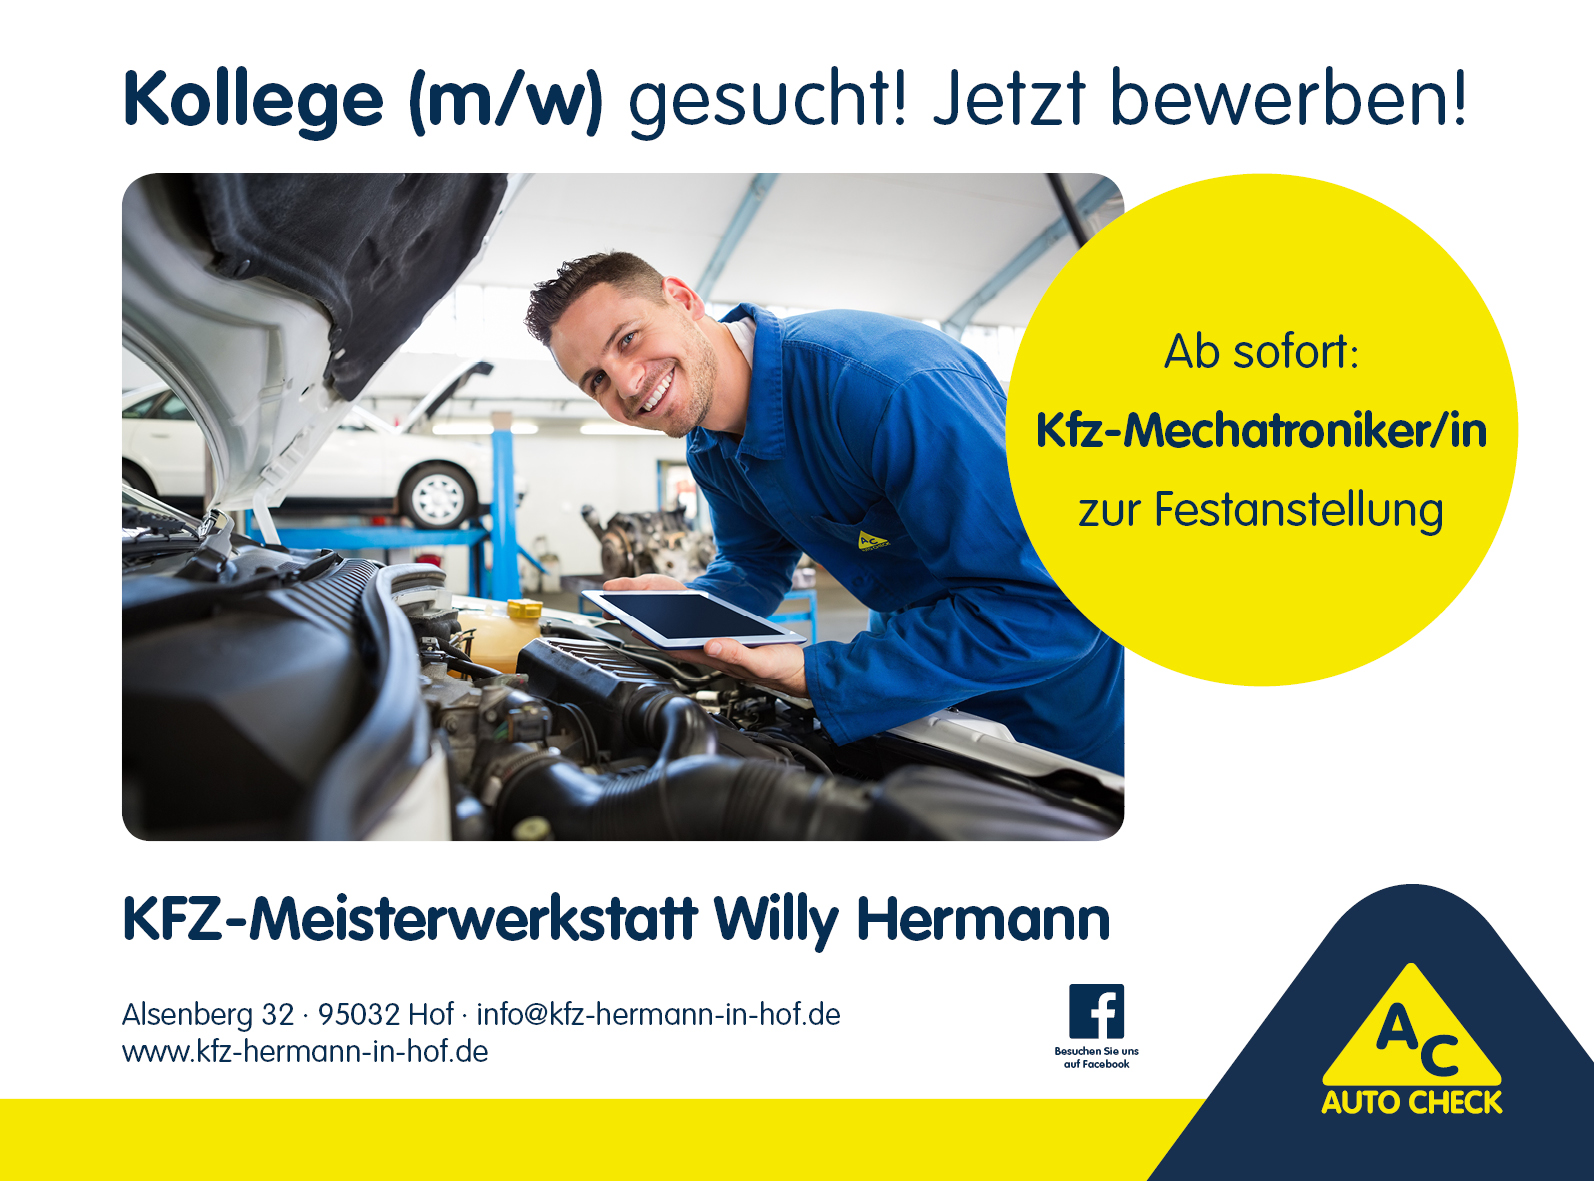 Kfz-Meisterwerkstatt Willy Hermann sucht: Kfz-Mechatroniker